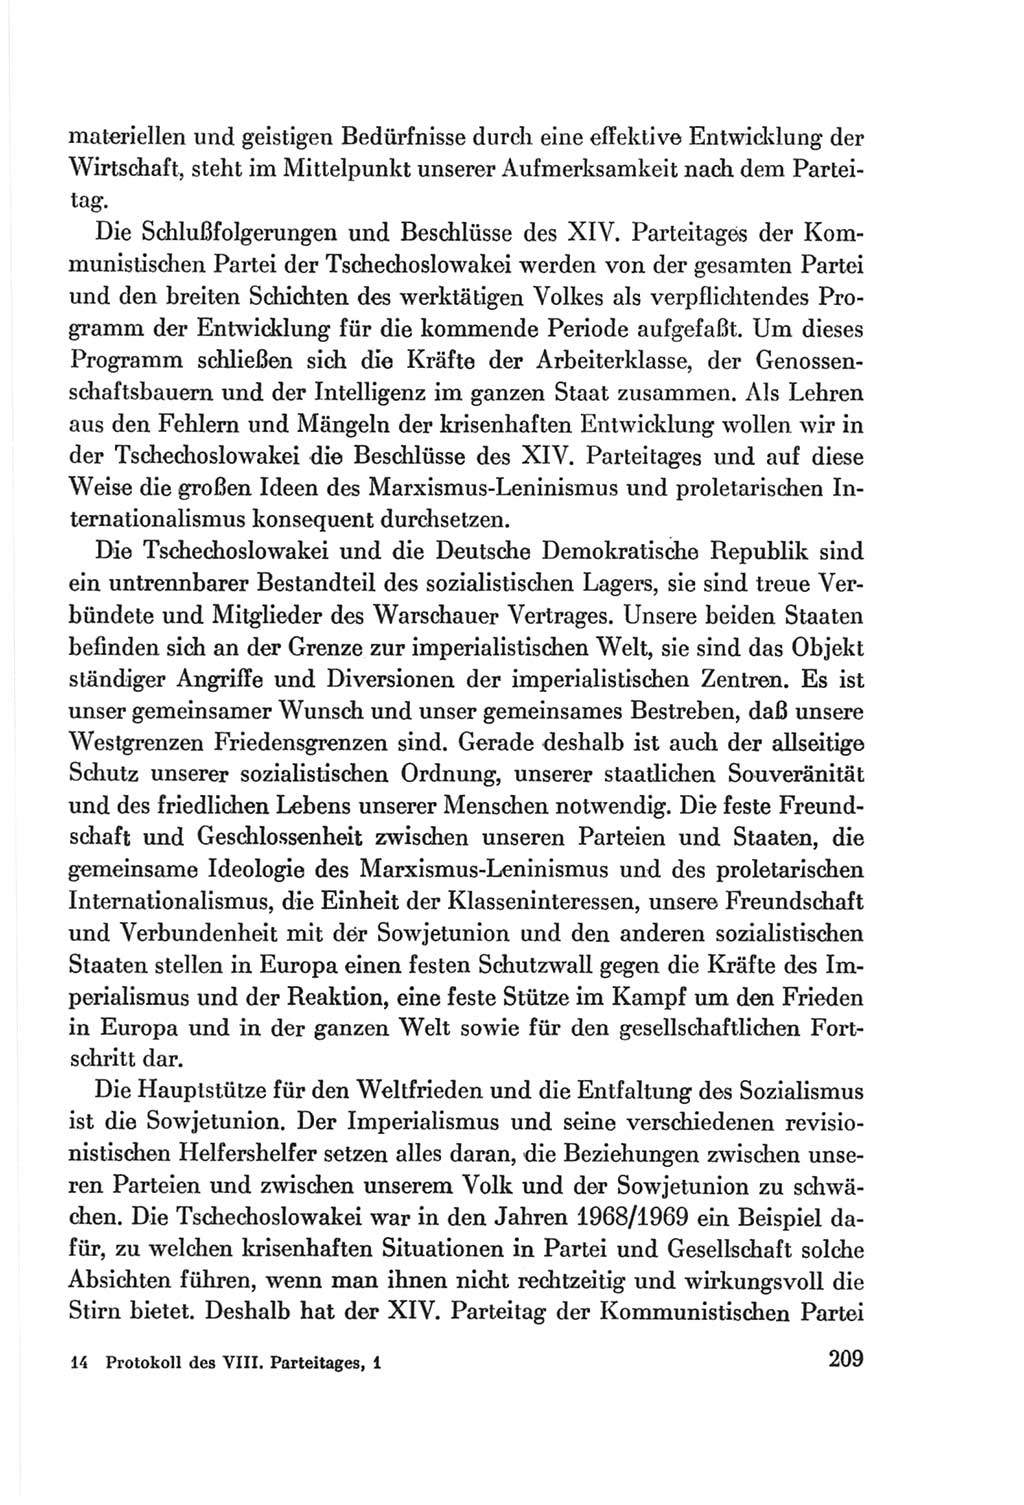 Protokoll der Verhandlungen des Ⅷ. Parteitages der Sozialistischen Einheitspartei Deutschlands (SED) [Deutsche Demokratische Republik (DDR)] 1971, Band 1, Seite 209 (Prot. Verh. Ⅷ. PT SED DDR 1971, Bd. 1, S. 209)